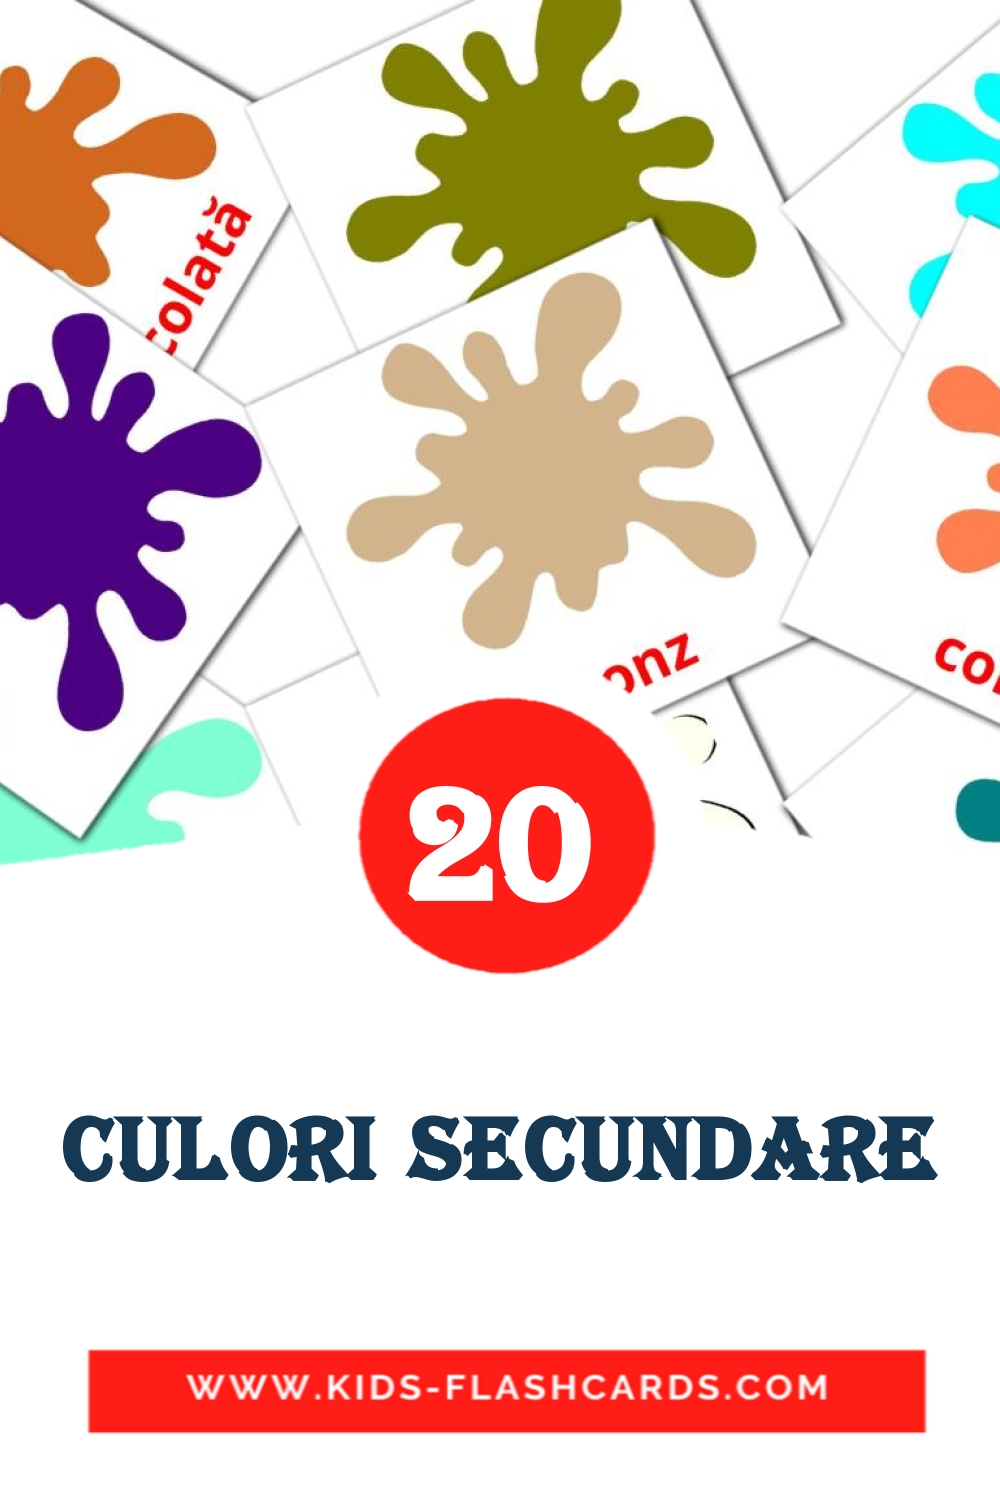 20 Culori secundare fotokaarten voor kleuters in het roemeense